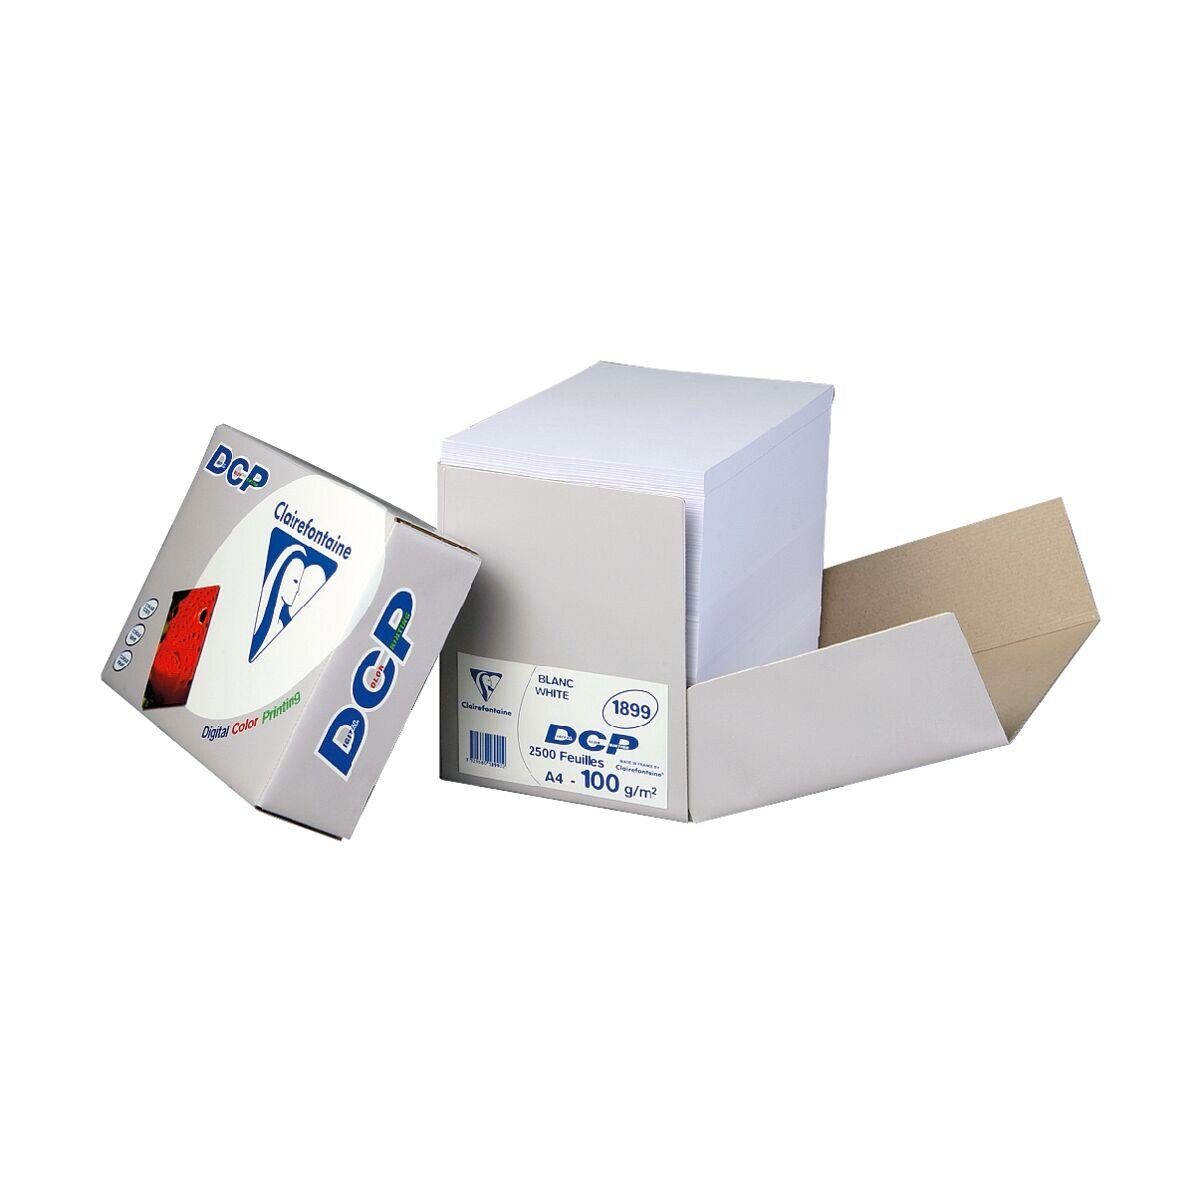 CLAIREFONTAINE Farblaser-Druckerpapier DCP, CIE, 2.500 A4, Format g/m², 172 Blatt 100 DIN